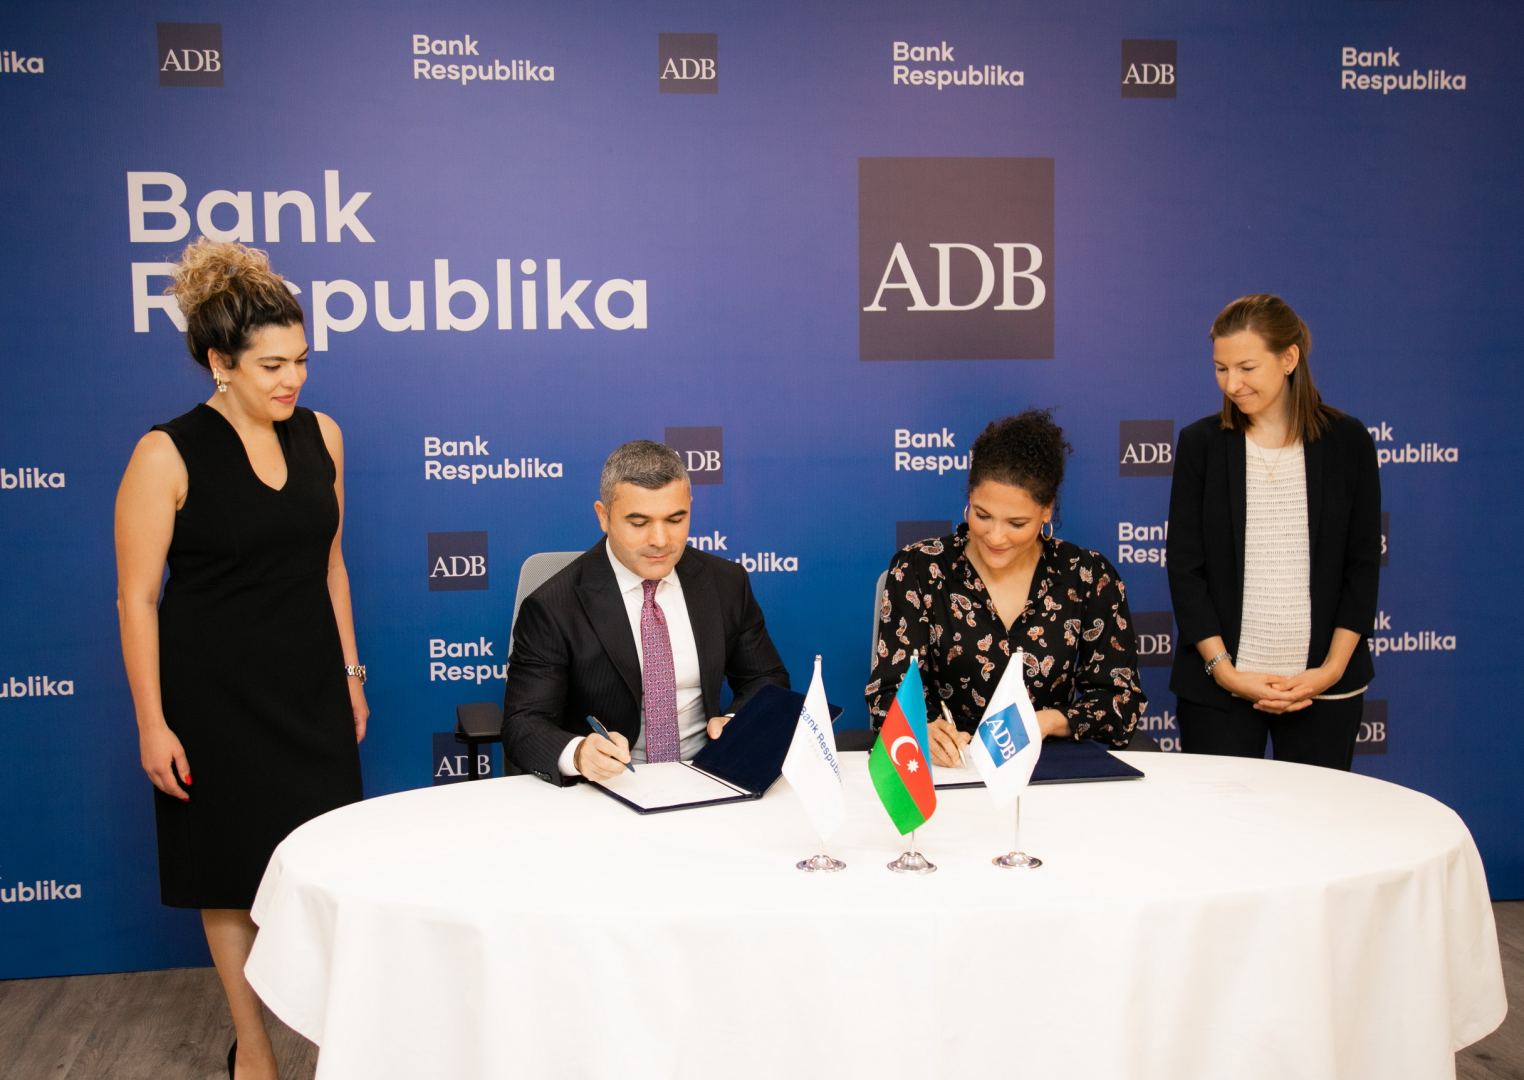 Азиатский Банк Развития вернулся на банковский рынок Азербайджана с Банком Республика! (ФОТО)